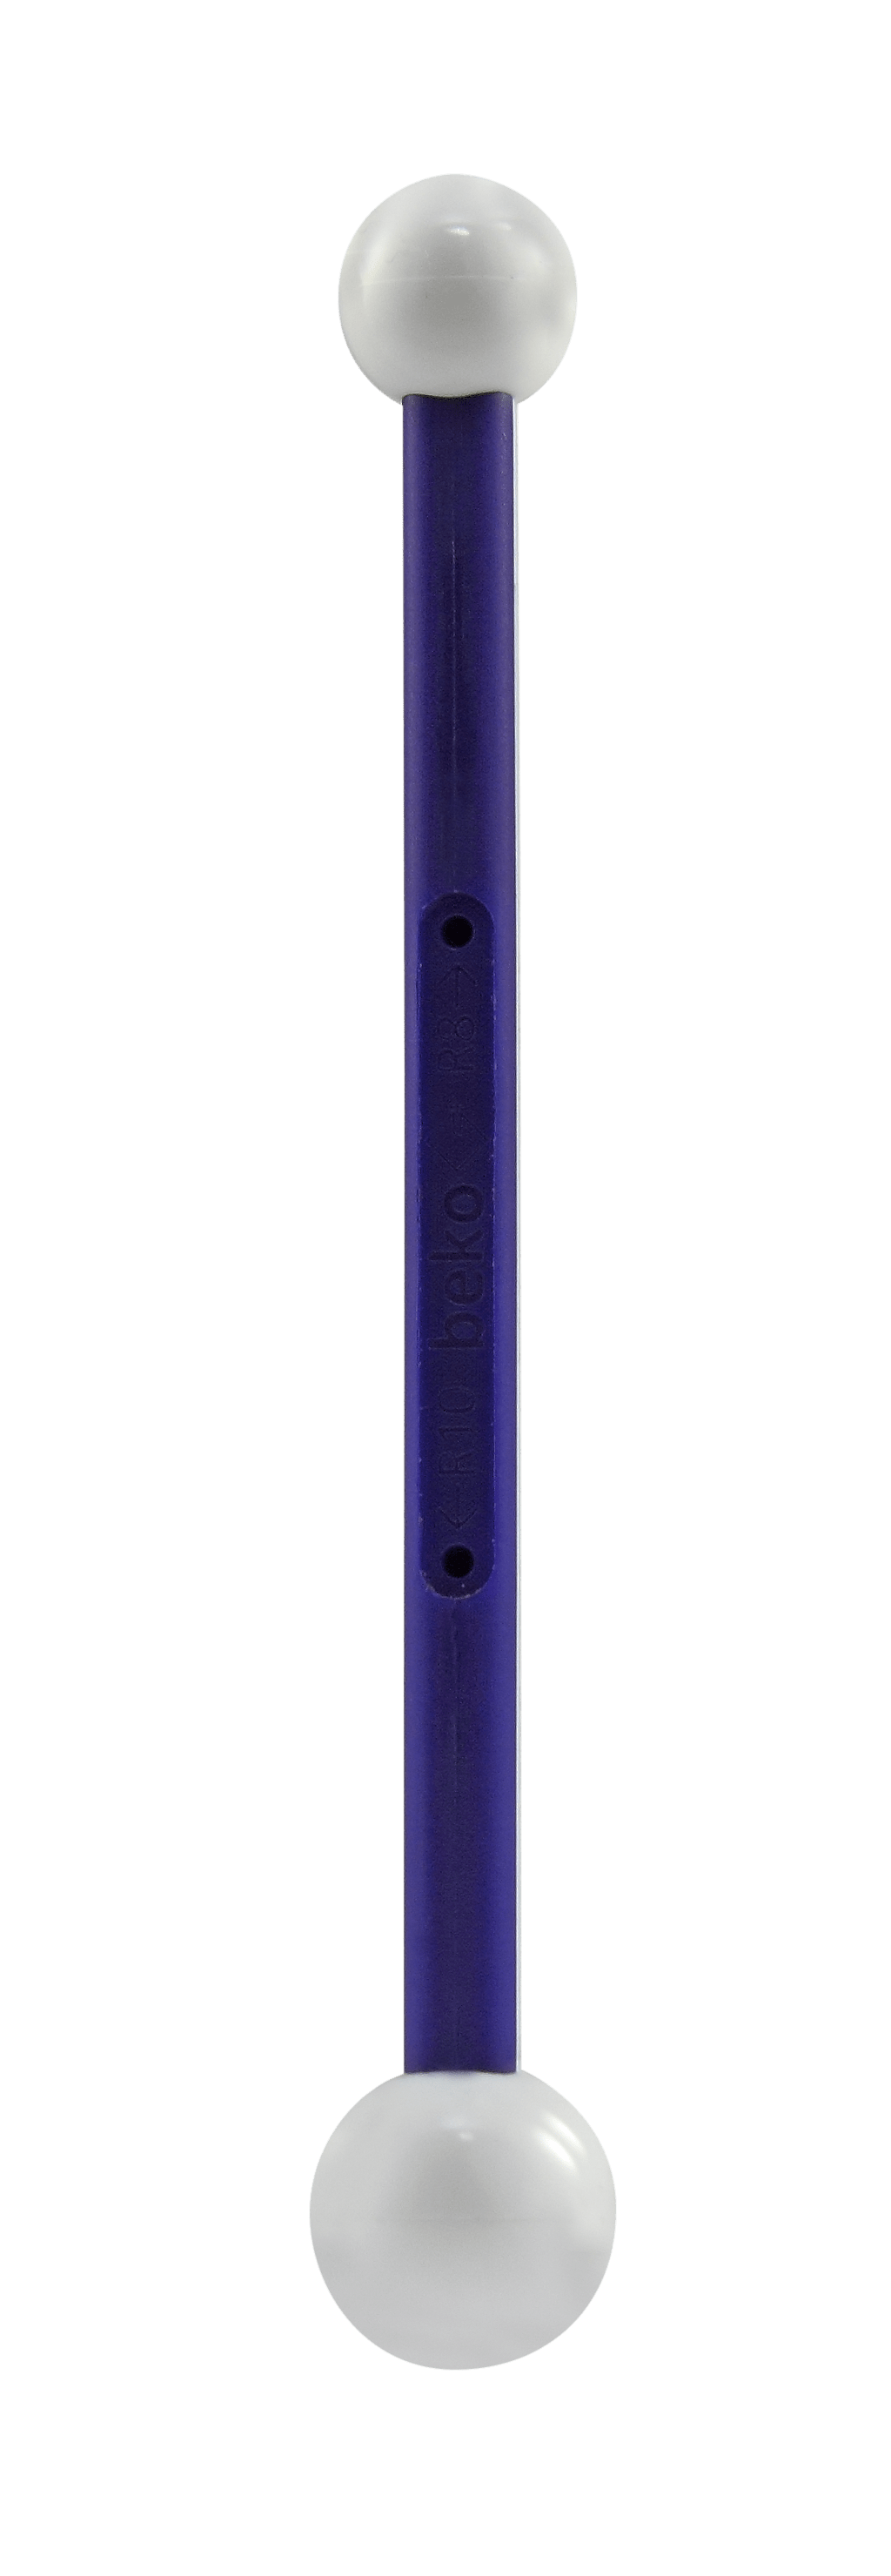 Farbwanne-Kunststoff - KreideEmulsion - Werkzeug - Zubehör